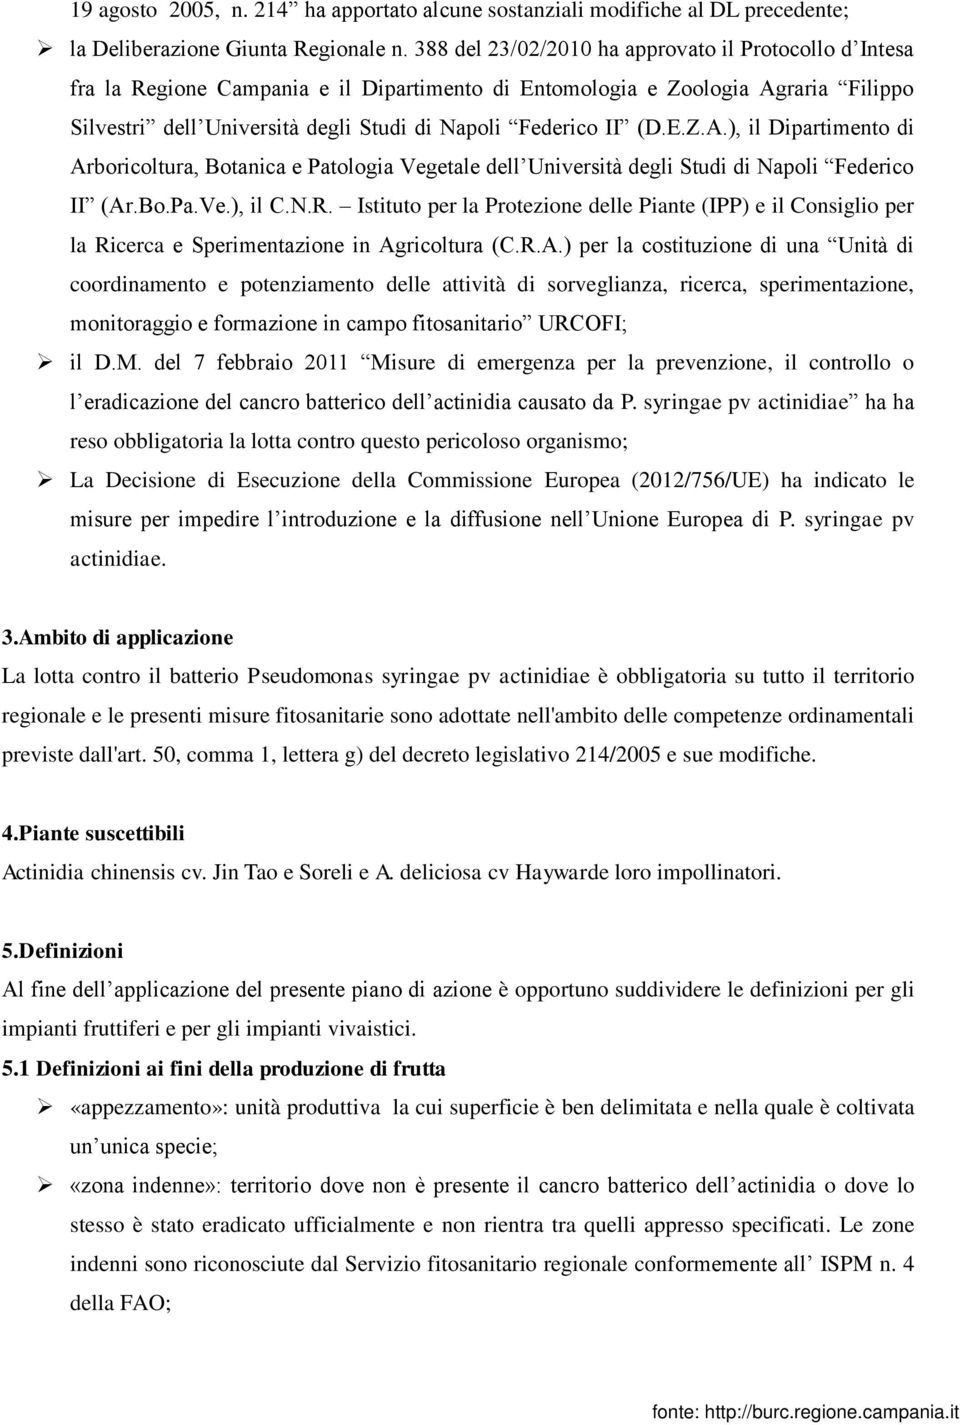 (D.E.Z.A.), il Dipartimento di Arboricoltura, Botanica e Patologia Vegetale dell Università degli Studi di Napoli Federico II (Ar.Bo.Pa.Ve.), il C.N.R.